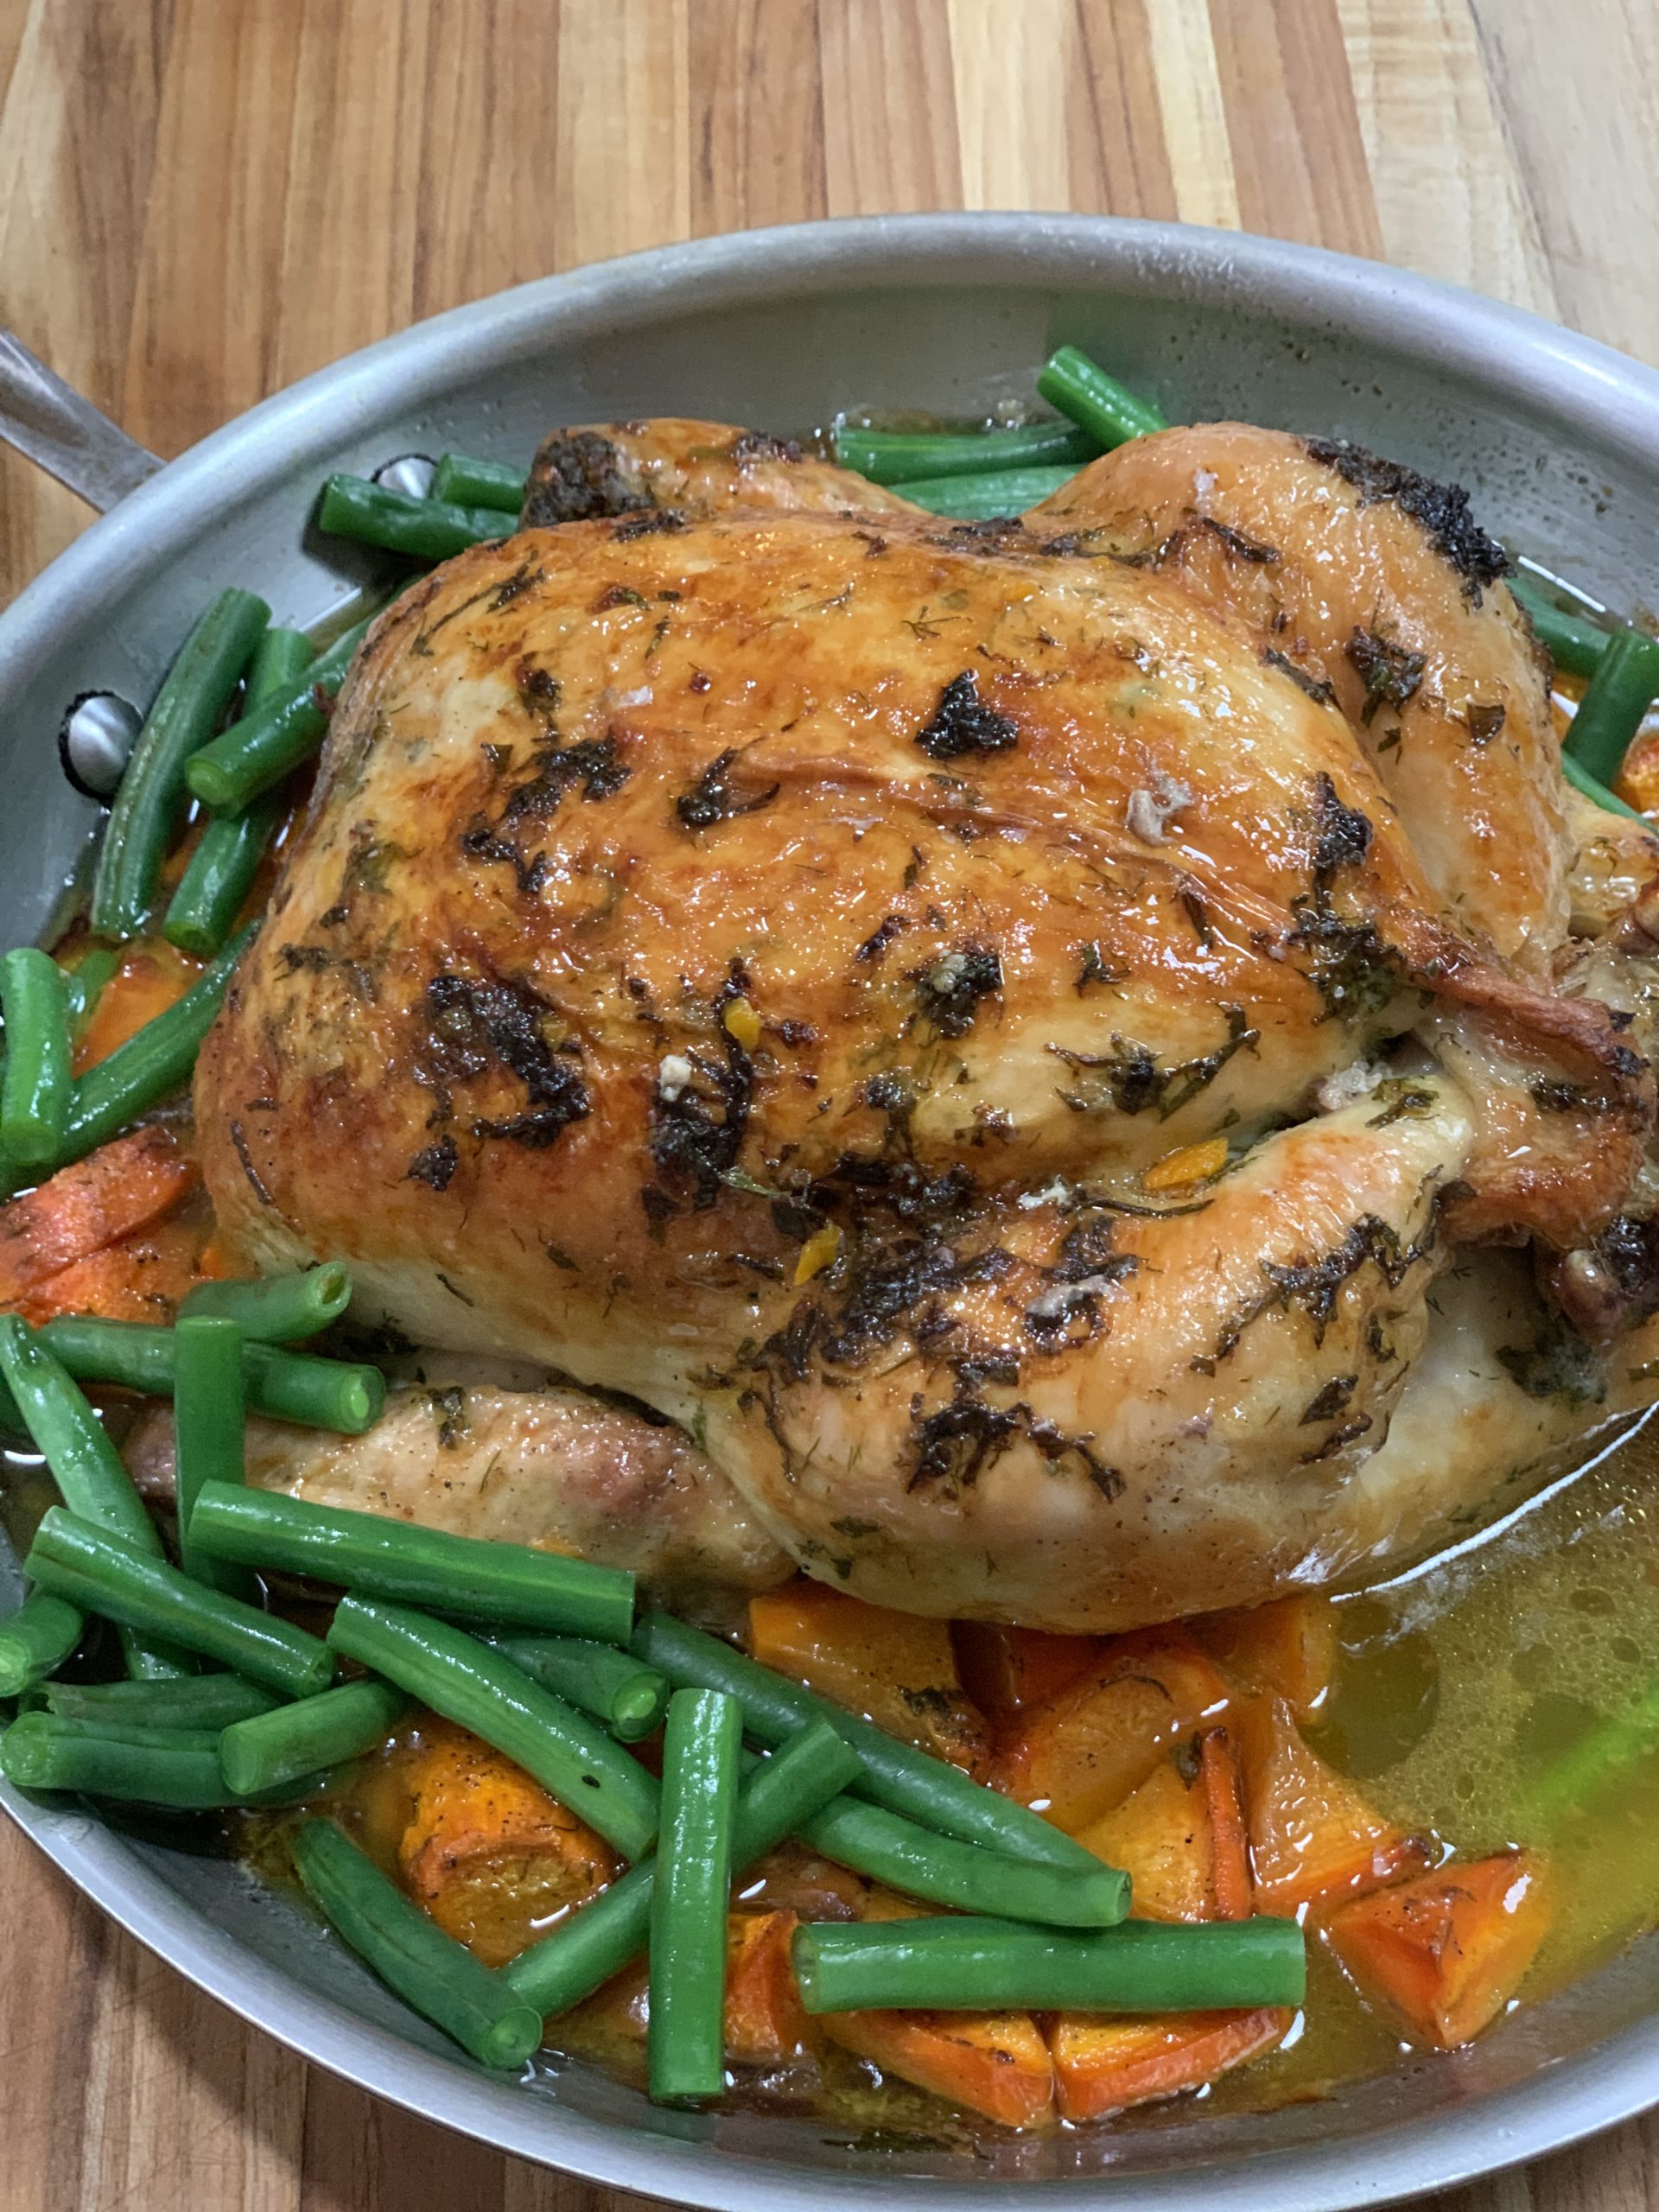 Herb-roasted chicken